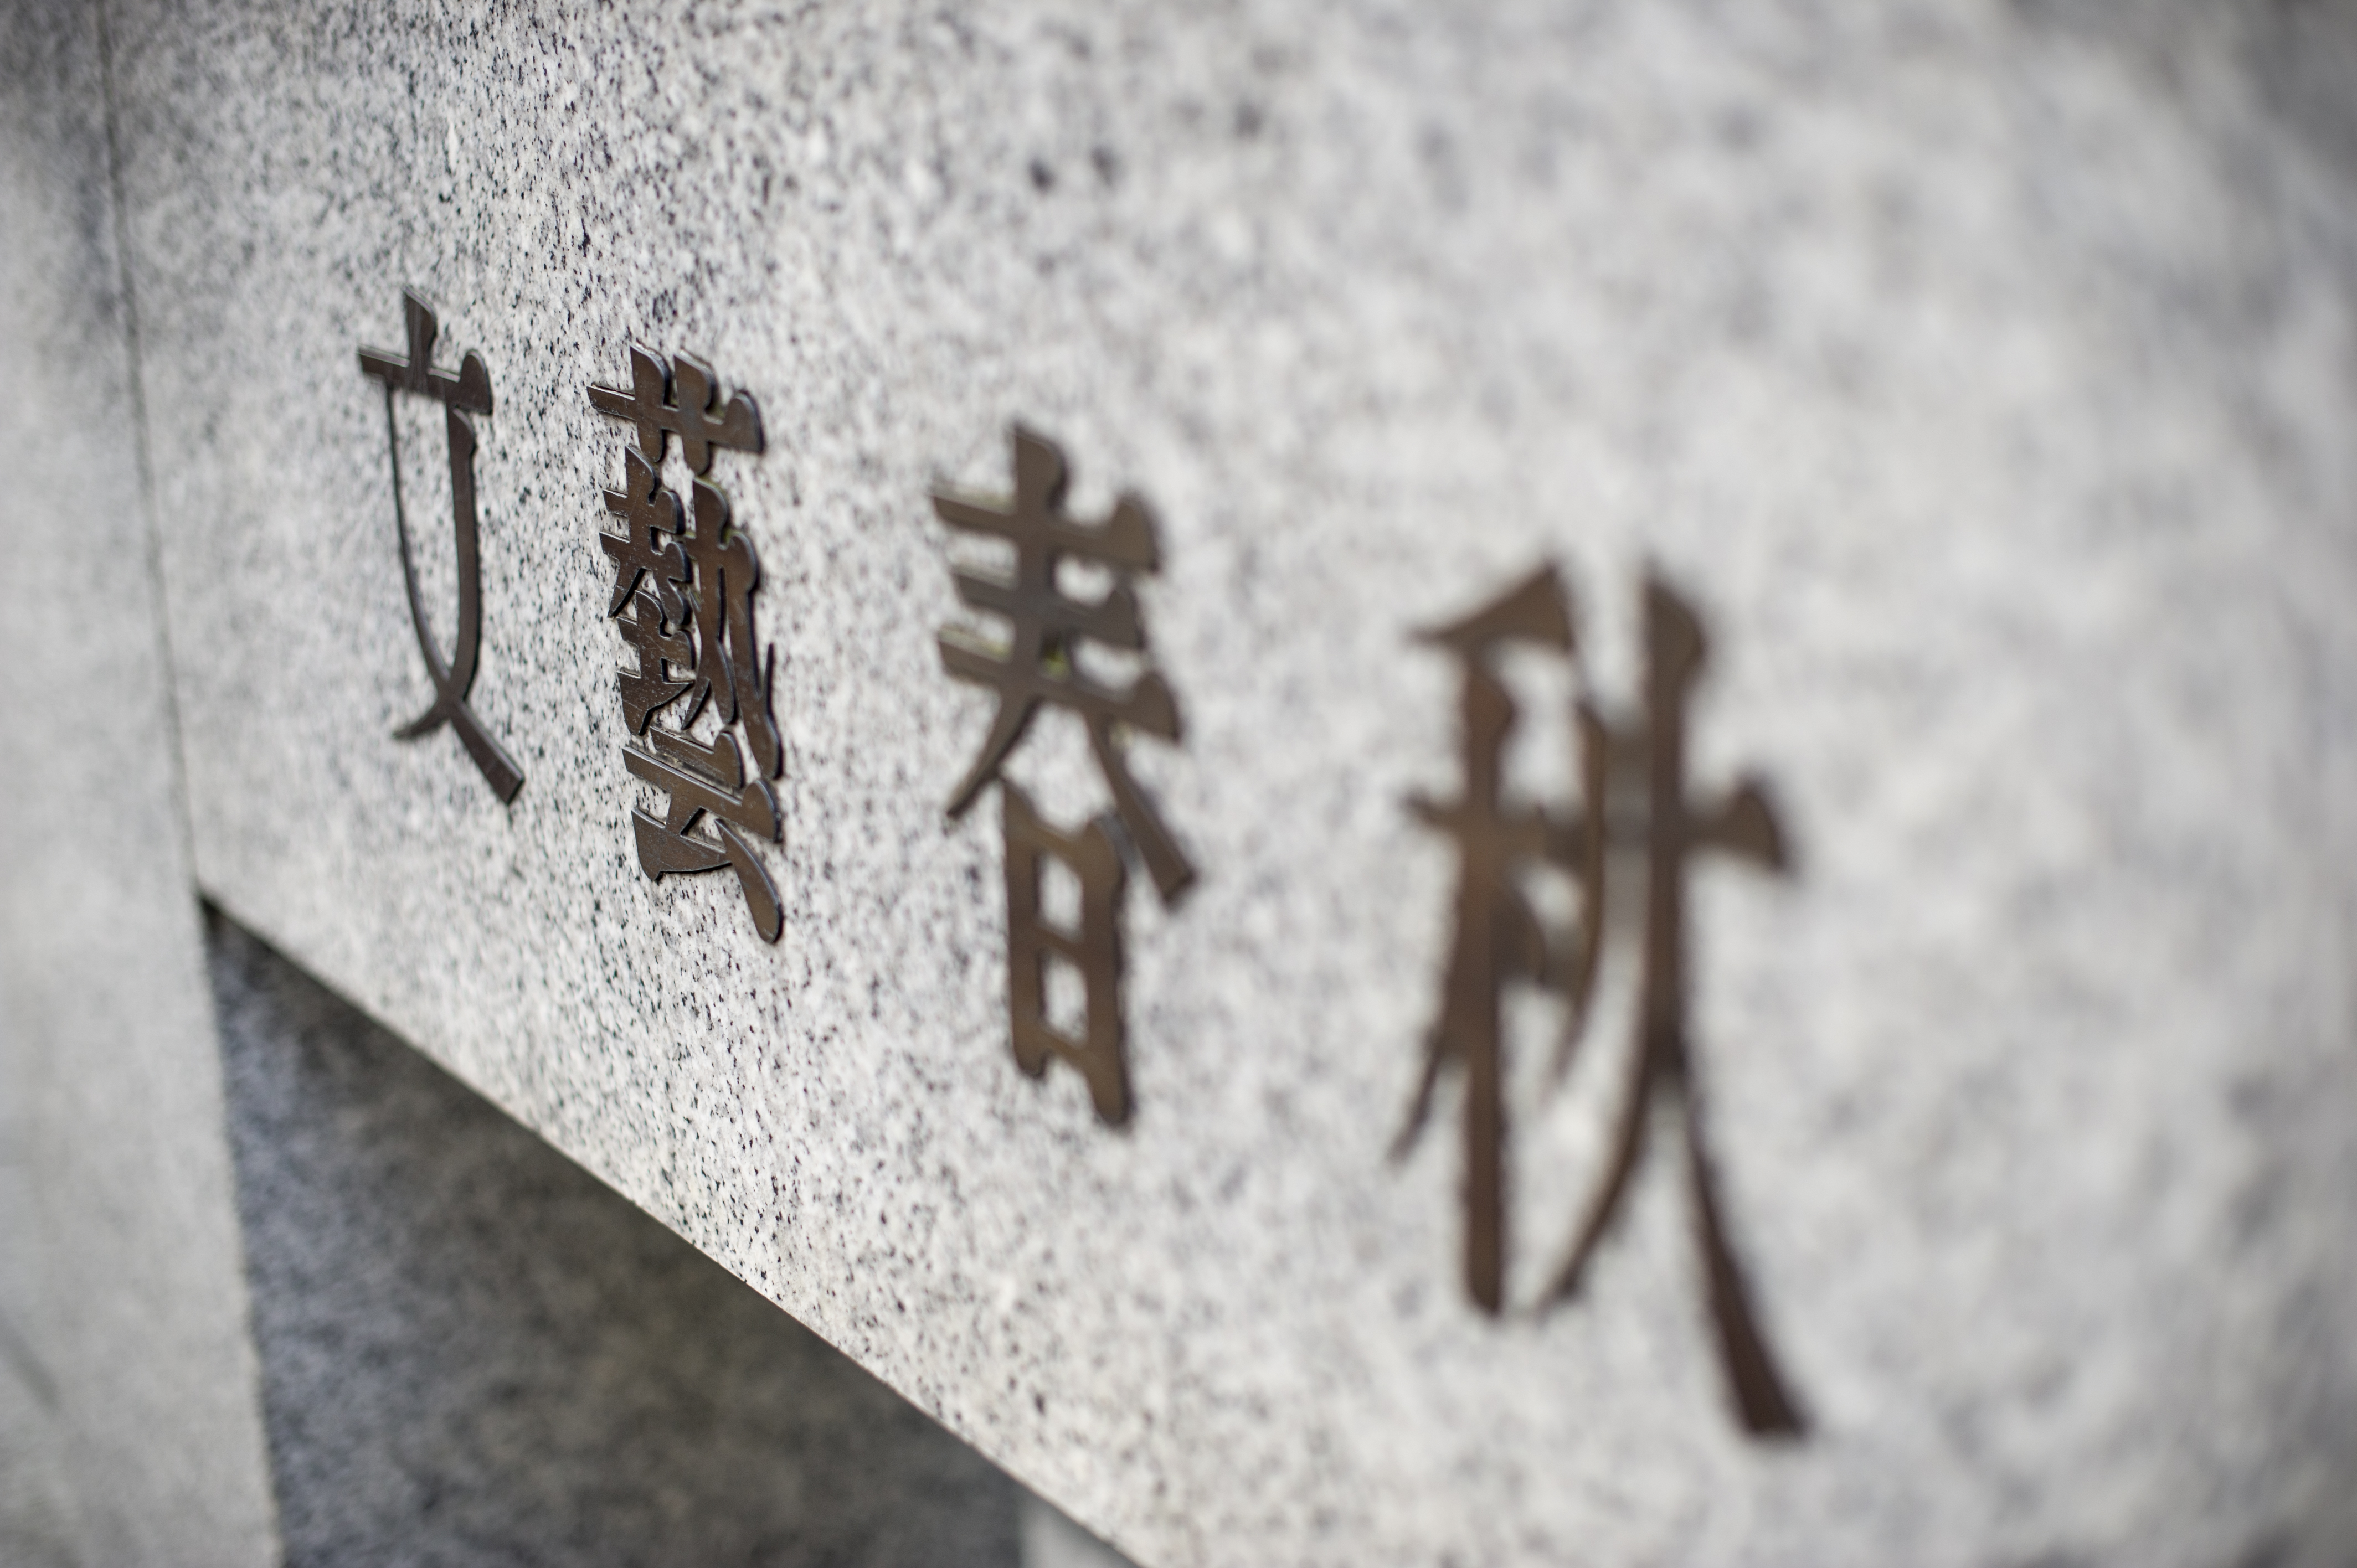 株式会社文藝春秋は、創業は大正12年（1923年）の日本を代表する出版社だ。